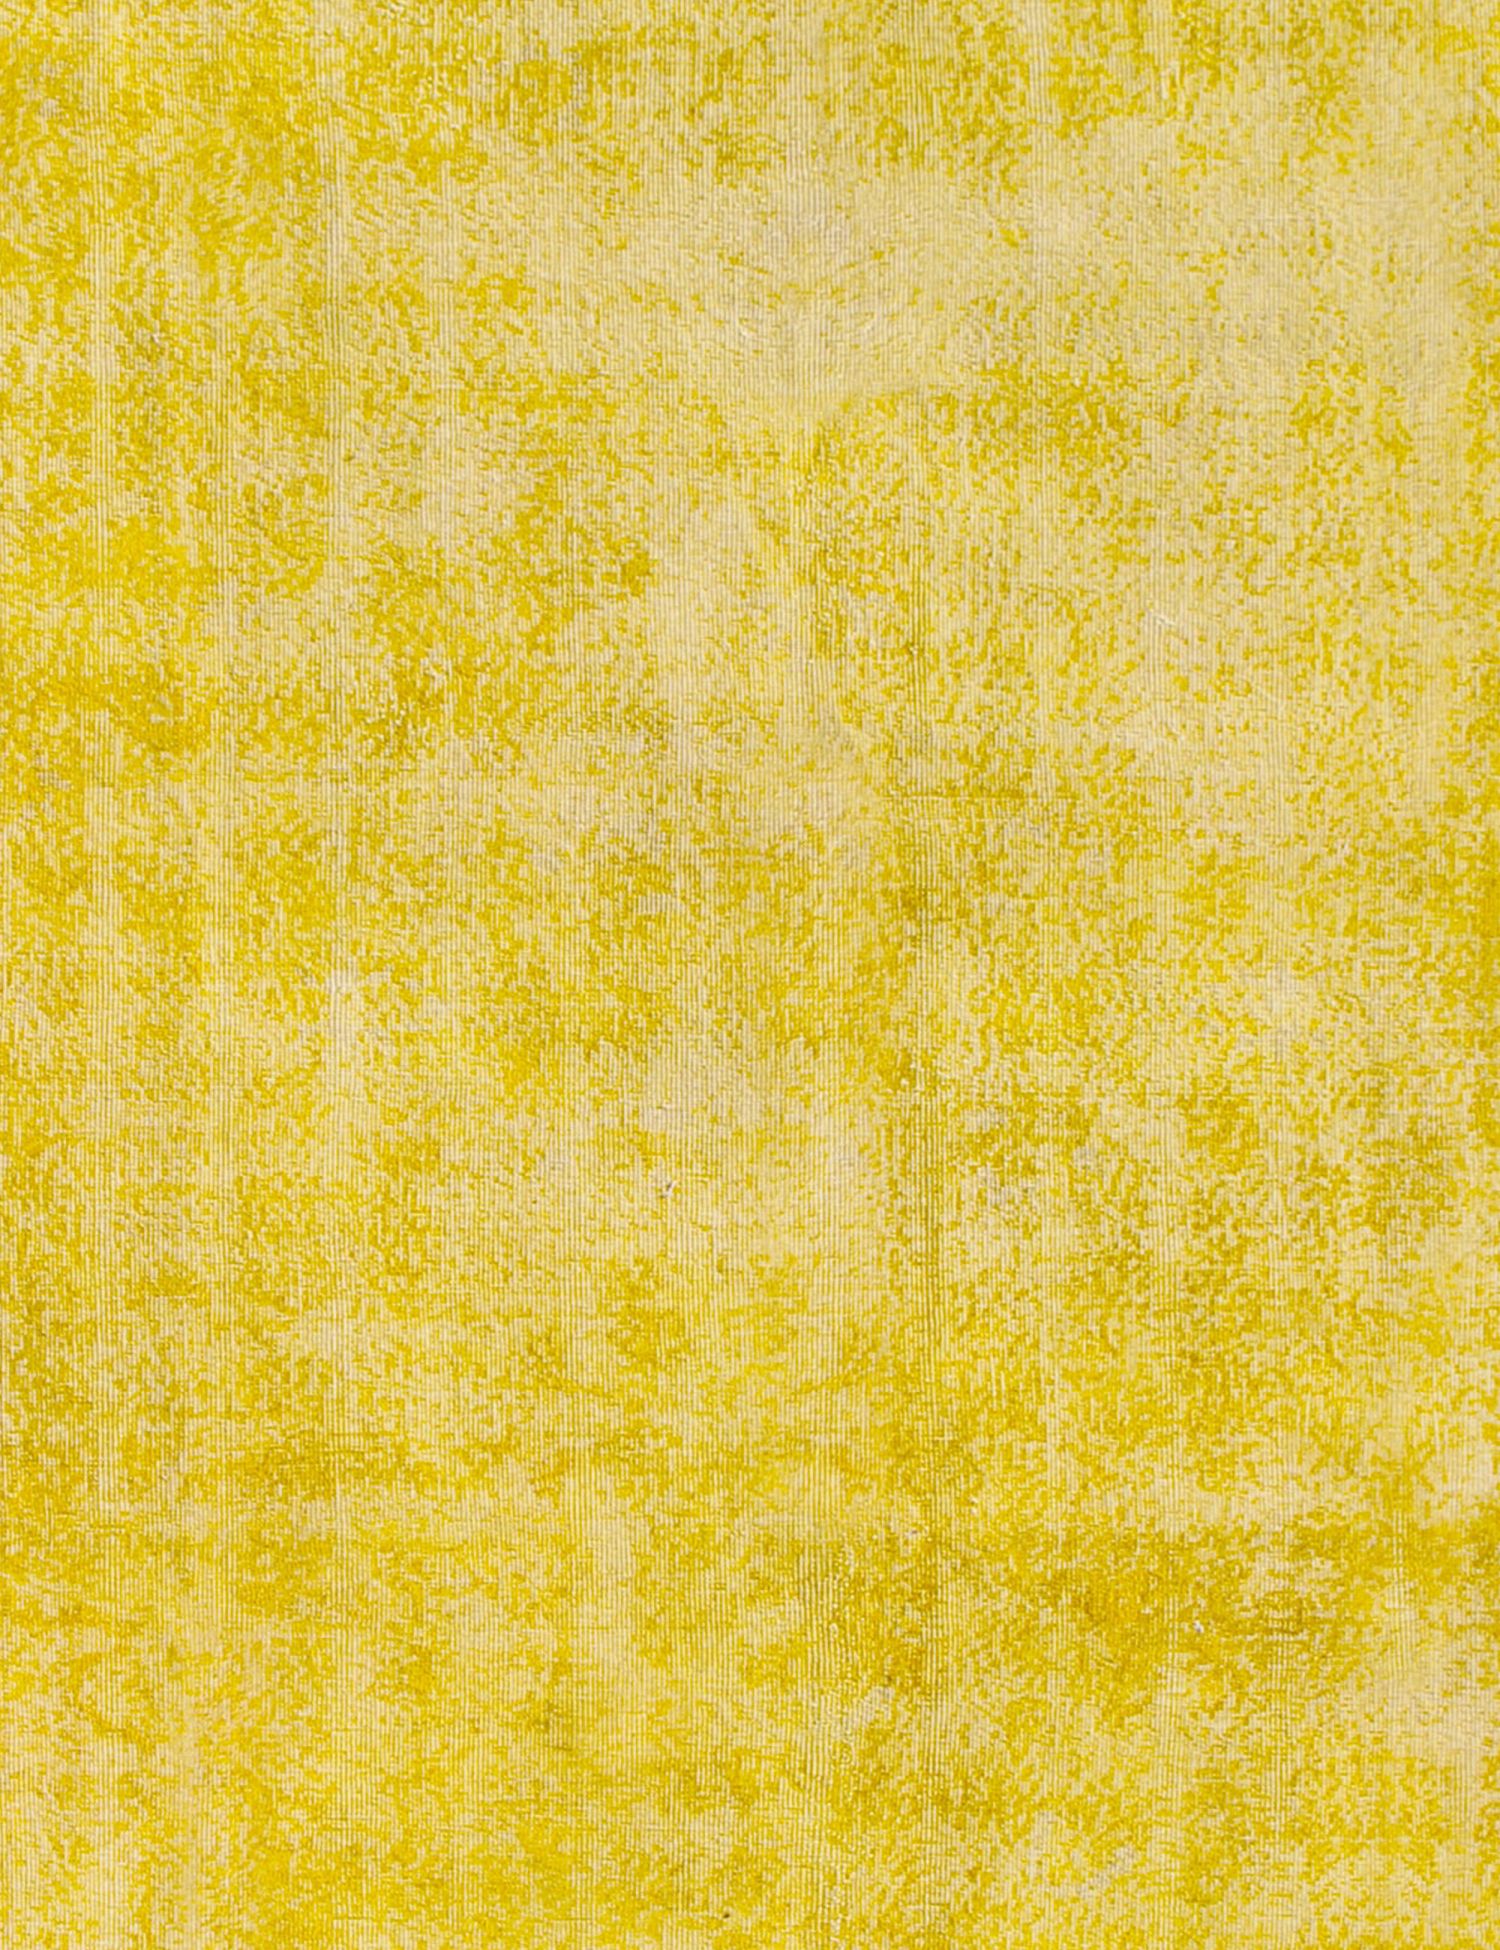 Vintage Teppich  gelb <br/>308 x 205 cm